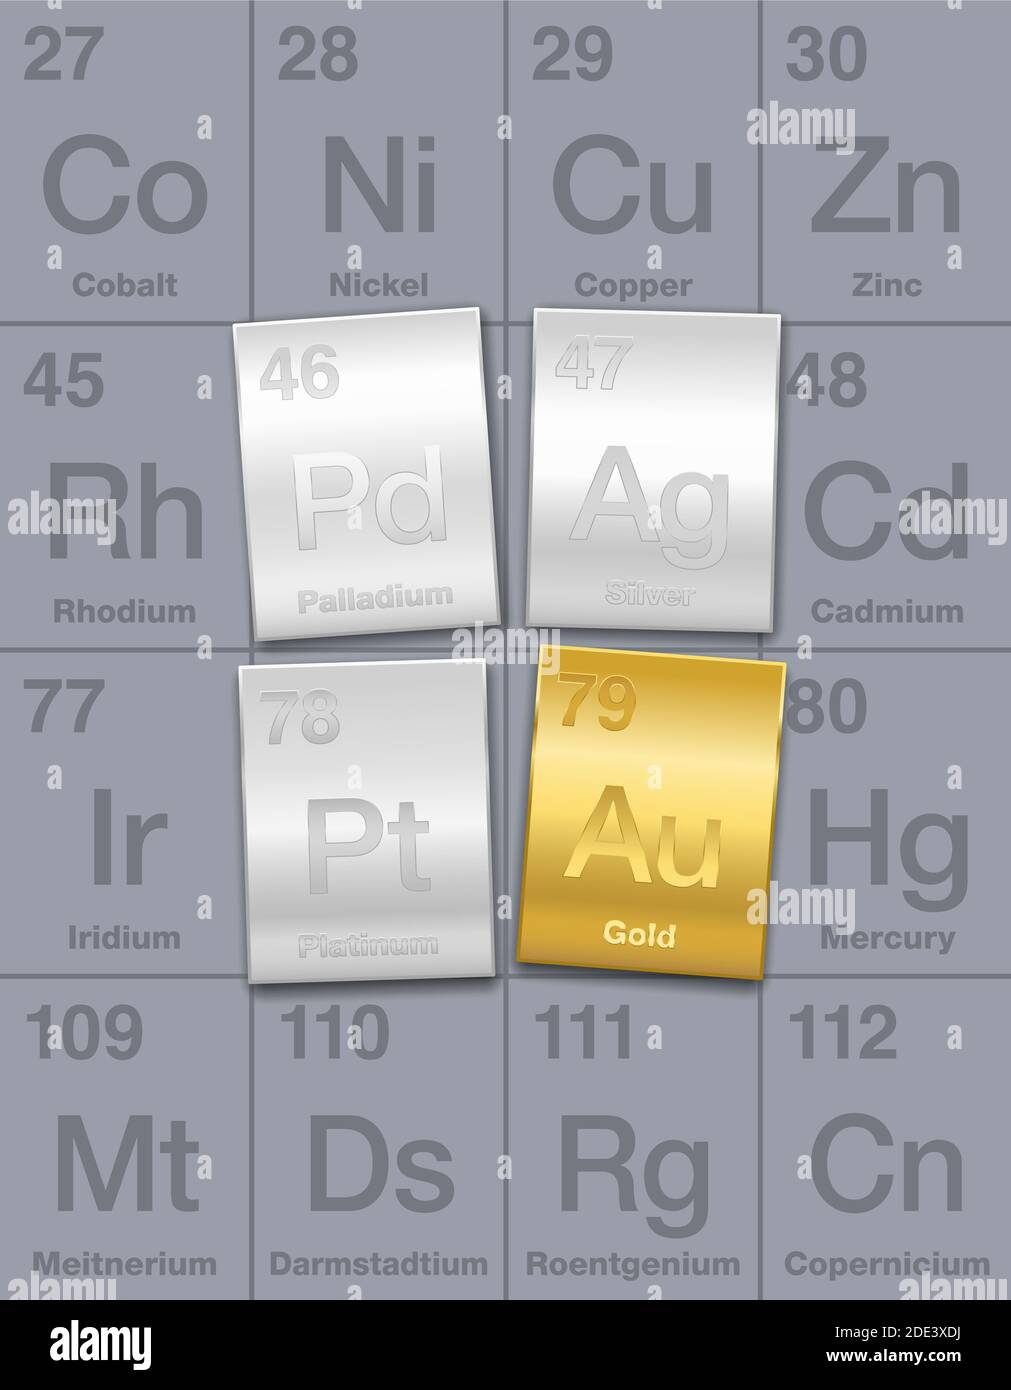 Metales preciosos en tabla periódica. Barras de oro, plata, platino y paladio. Elementos químicos de alto valor económico, considerados como una inversión. Foto de stock